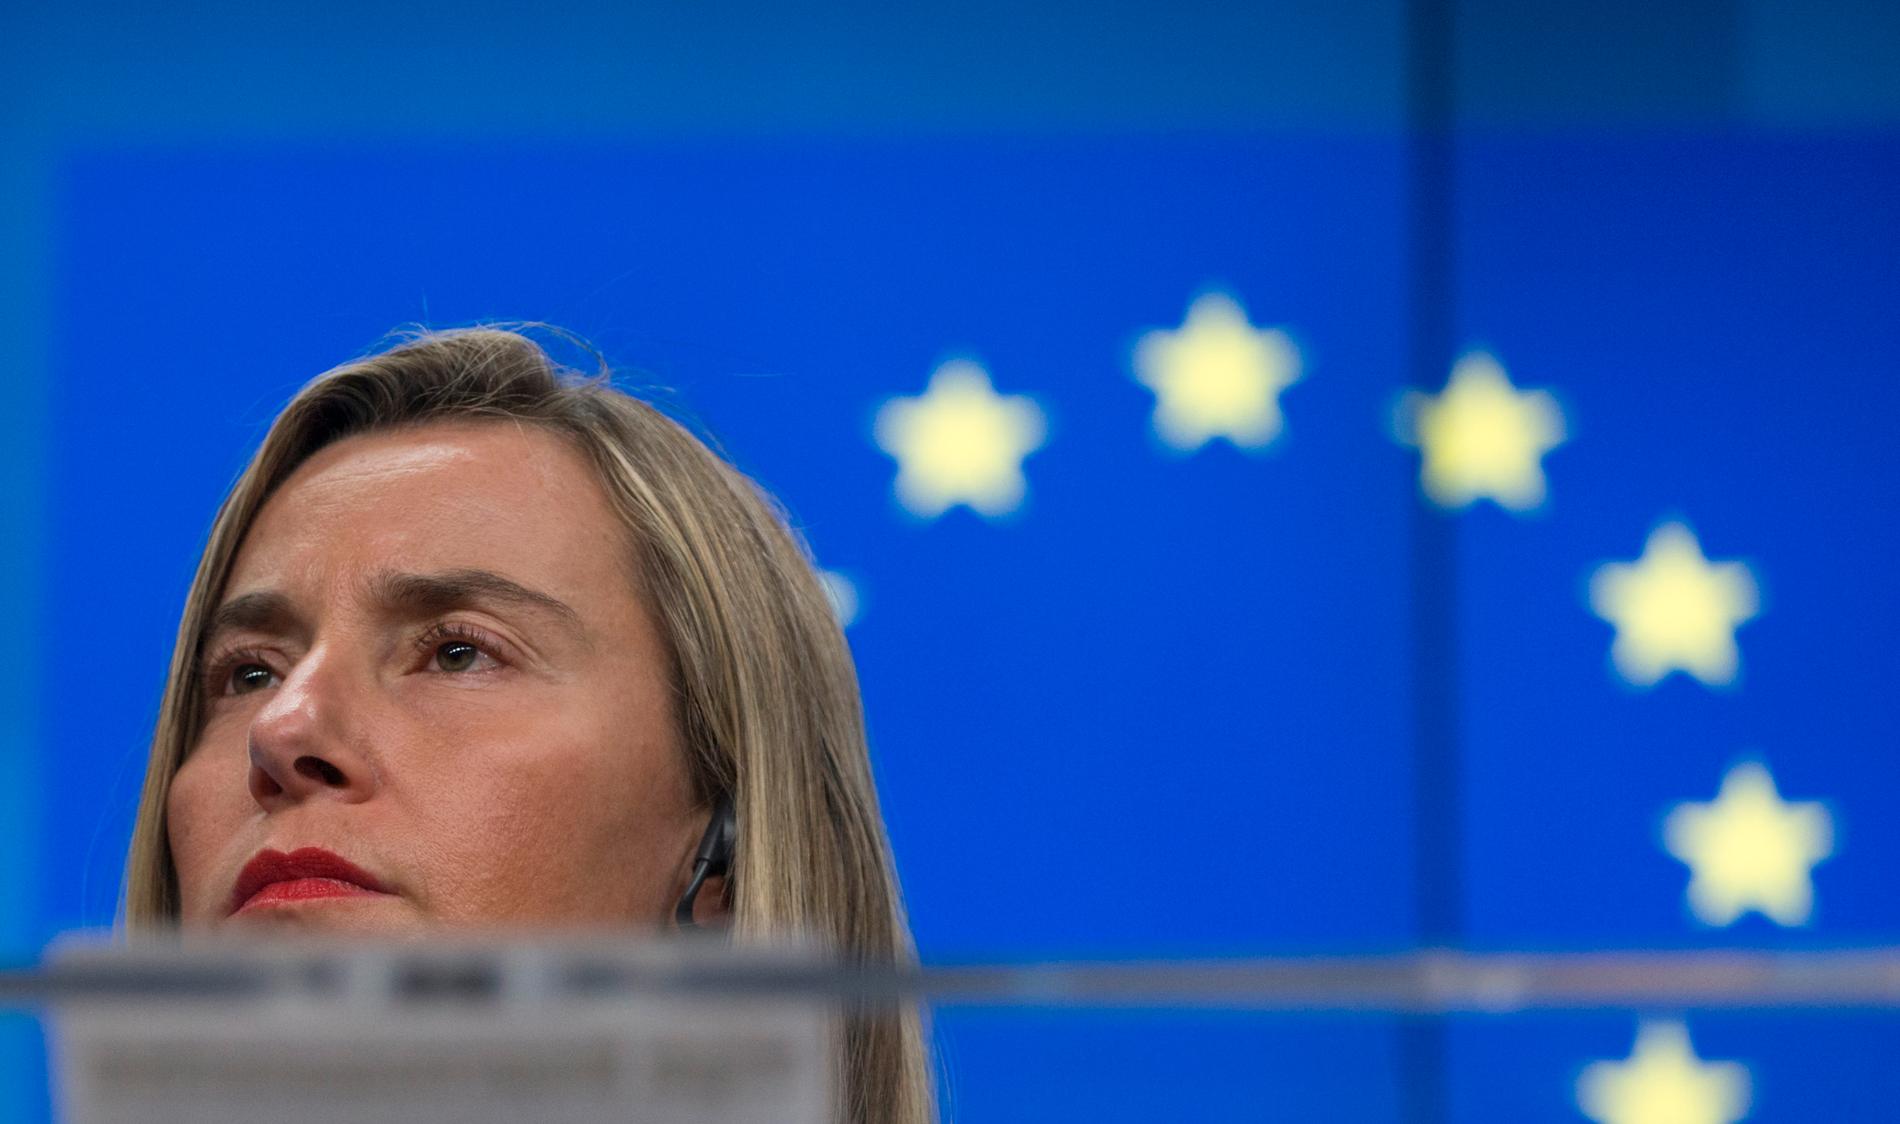 EU:s utrikeschef Federica Mogherini uttalar sig om Libyen sedan Frankrike och Italien kunnat enas om ett uttalande. Arkivbild.